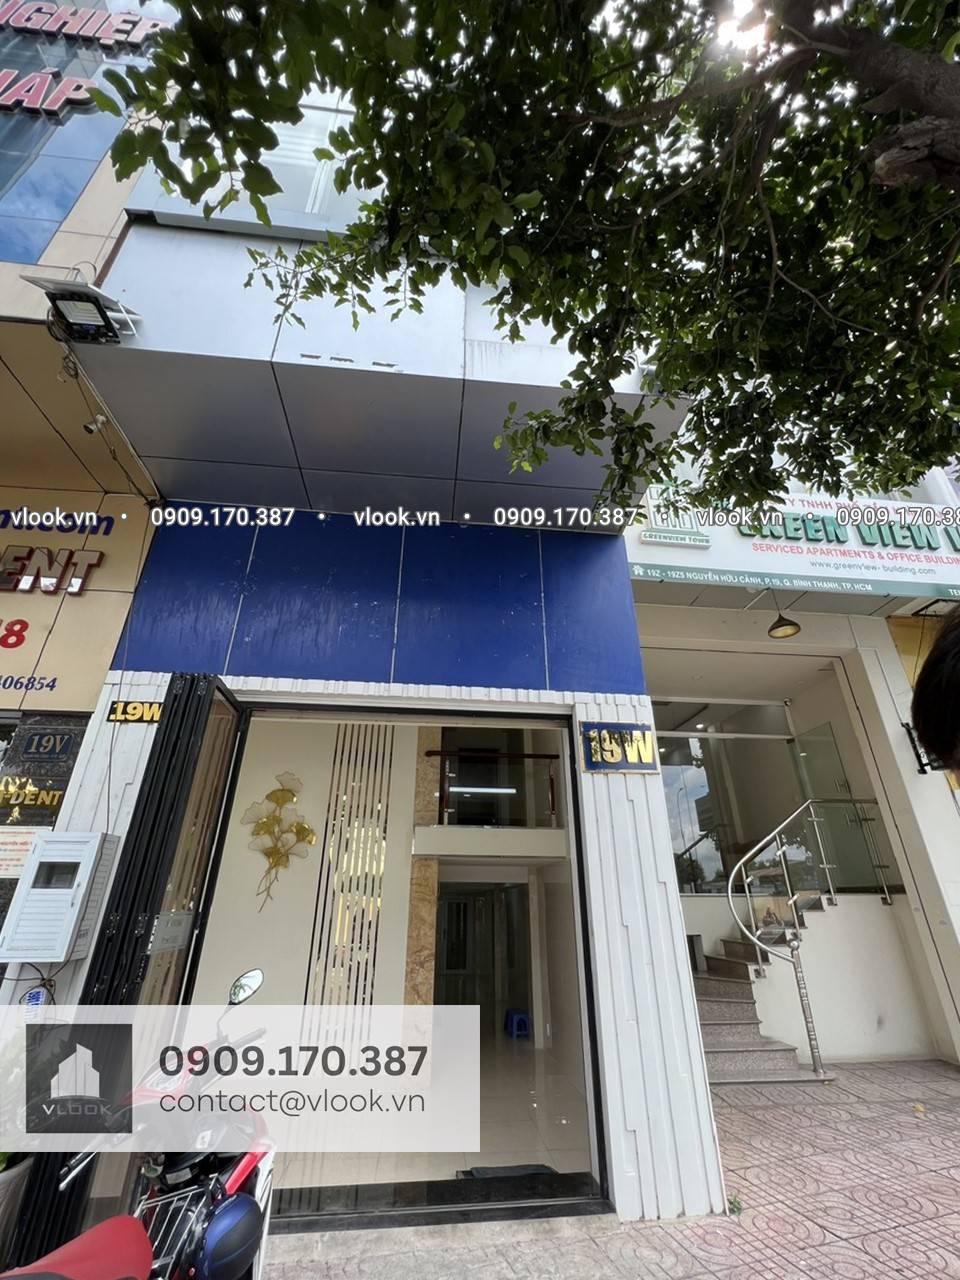 Cao ốc văn phòng cho thuê tòa nhà Green View 19W Nguyễn Hữu Cảnh, Quận Bình Thạnh, TPHCM - vlook.vn - 0909170387